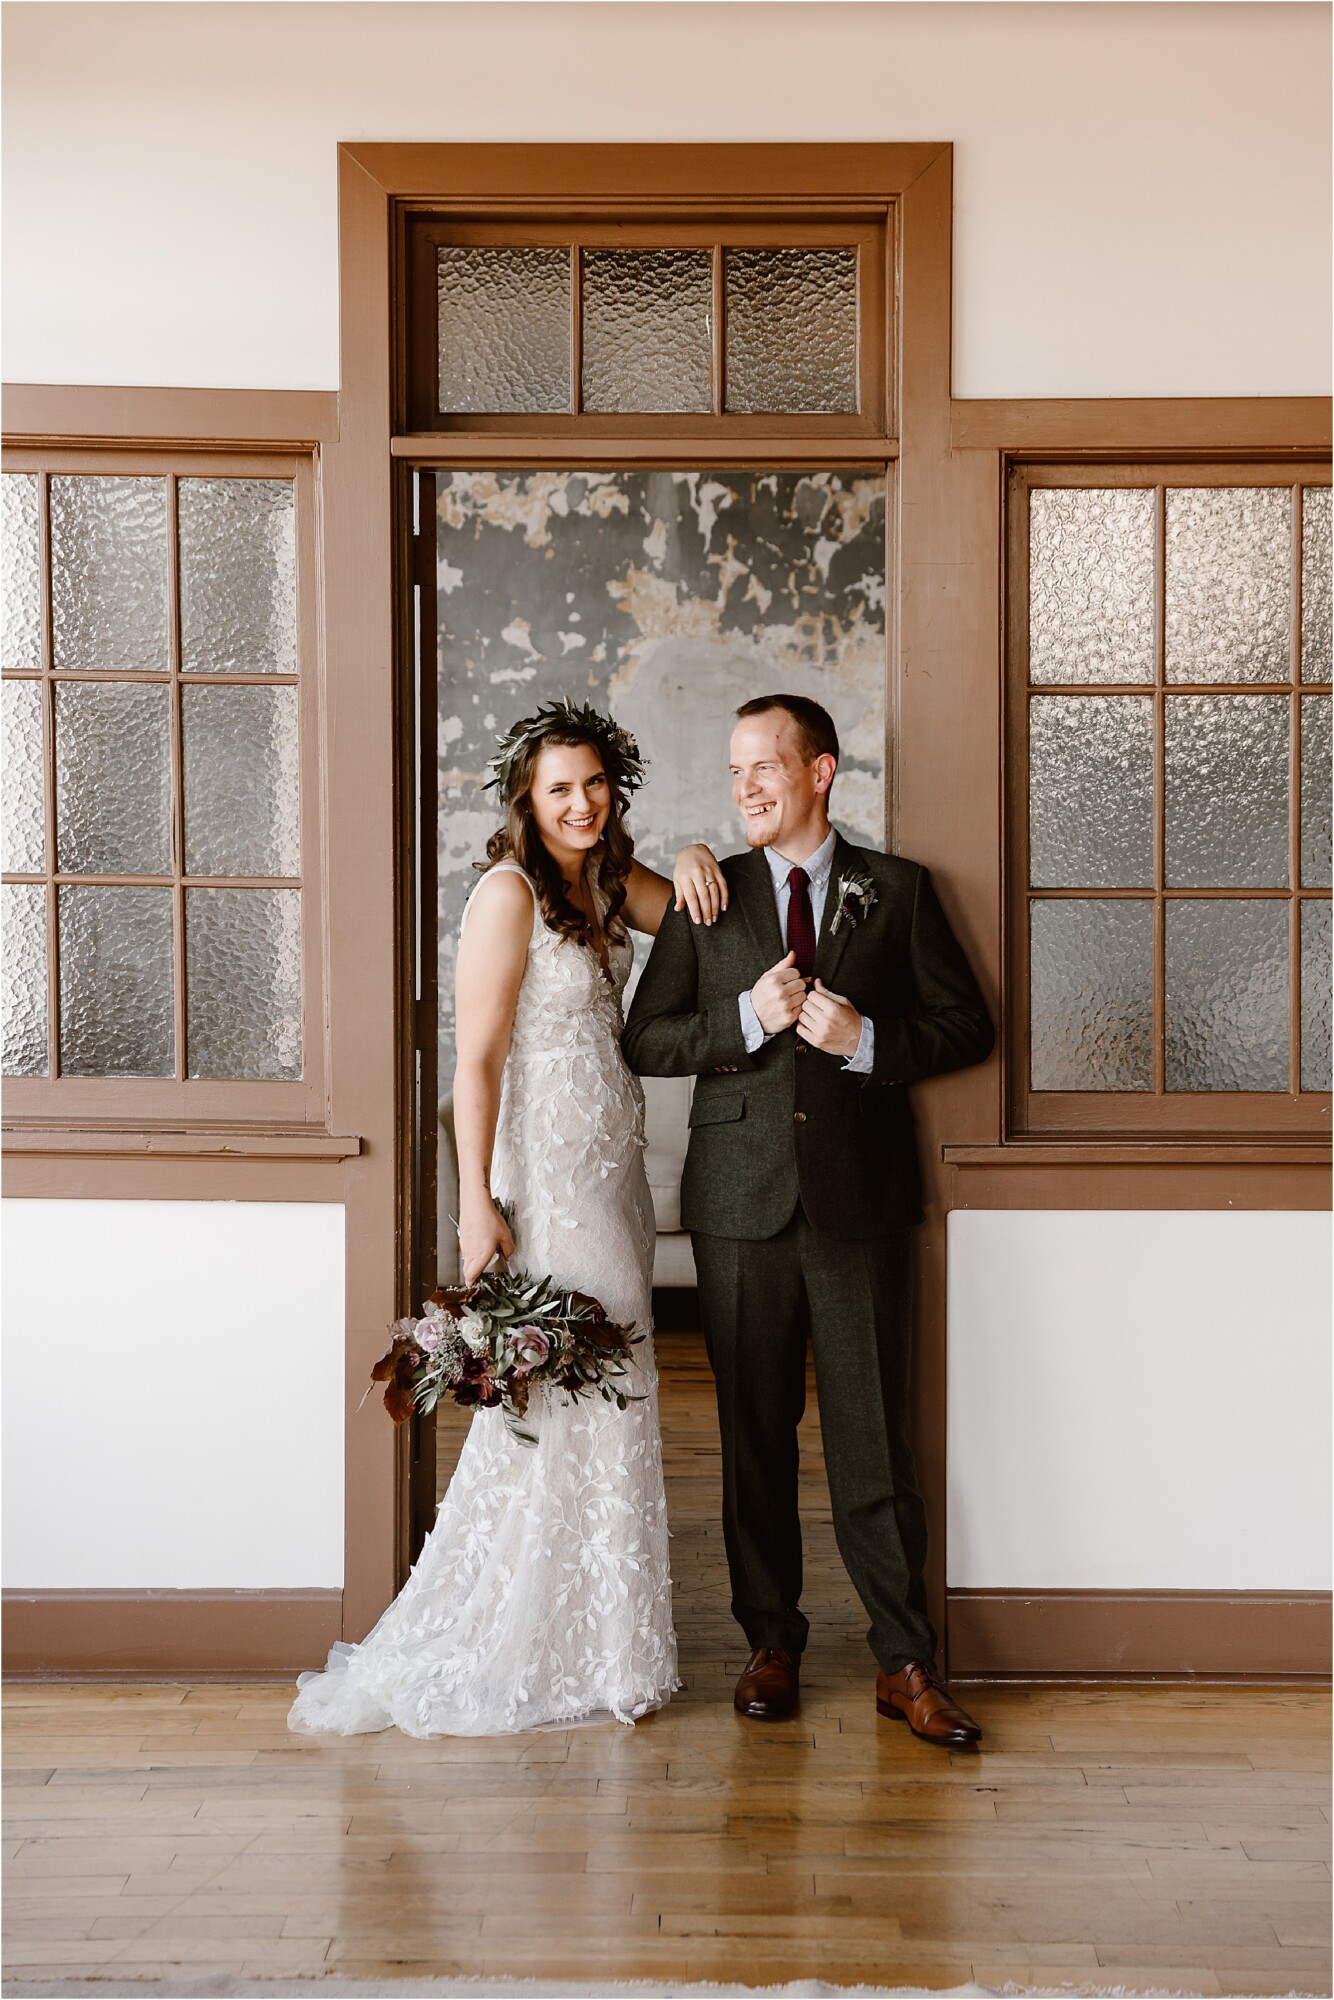 bride in flower crown and groom in tweed suit laugh together standing in front of vintage door